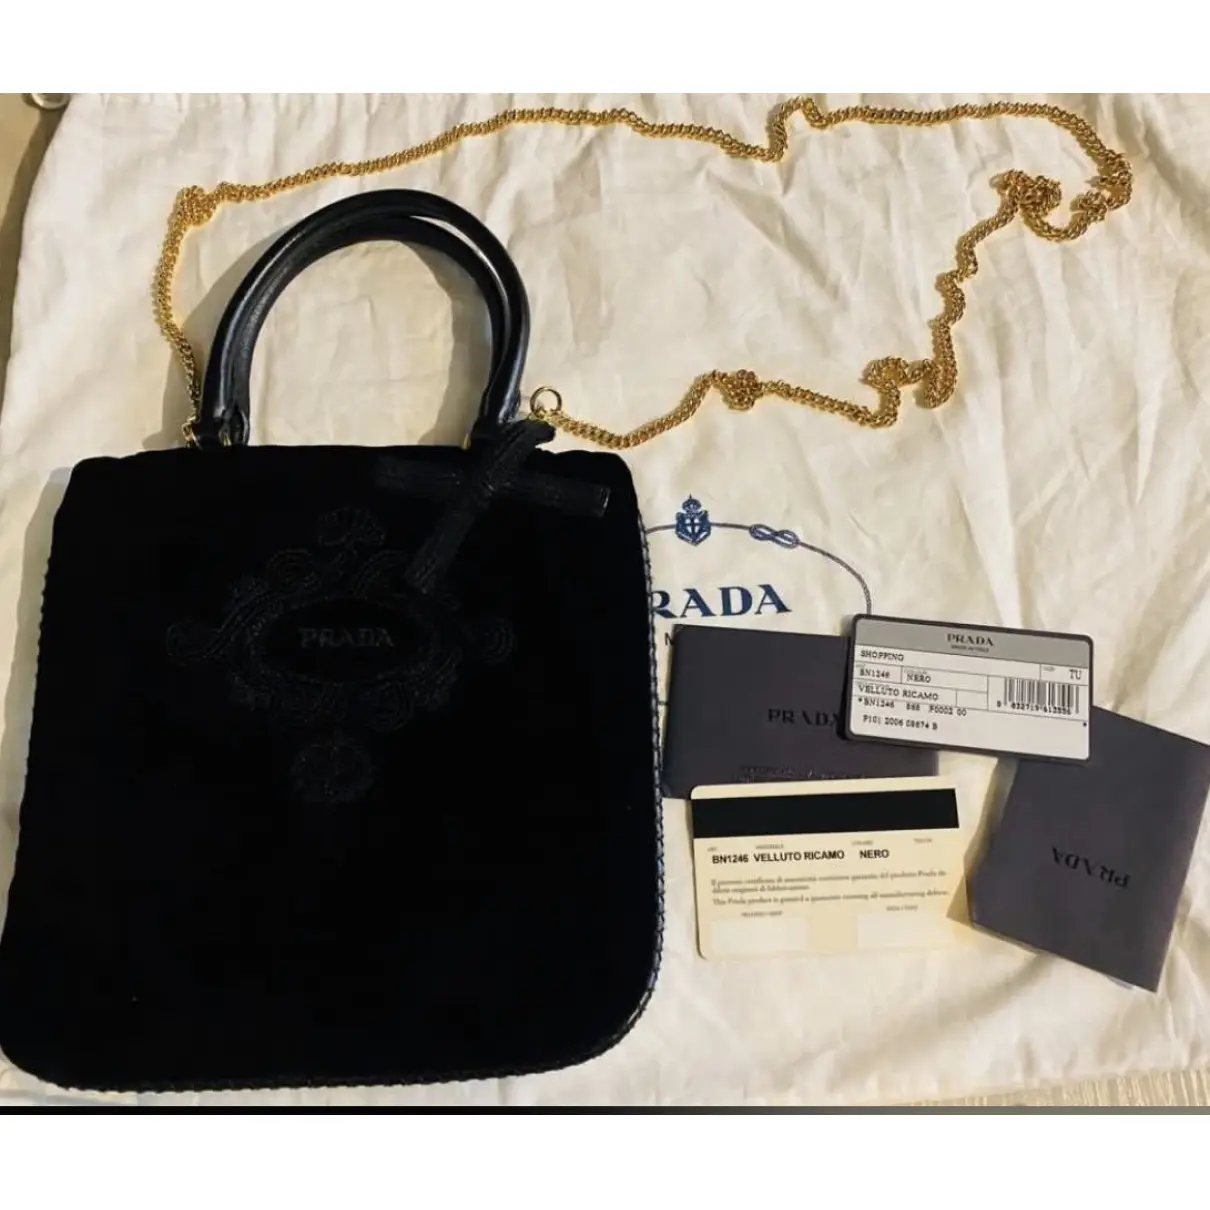 Monochrome velvet handbag Prada